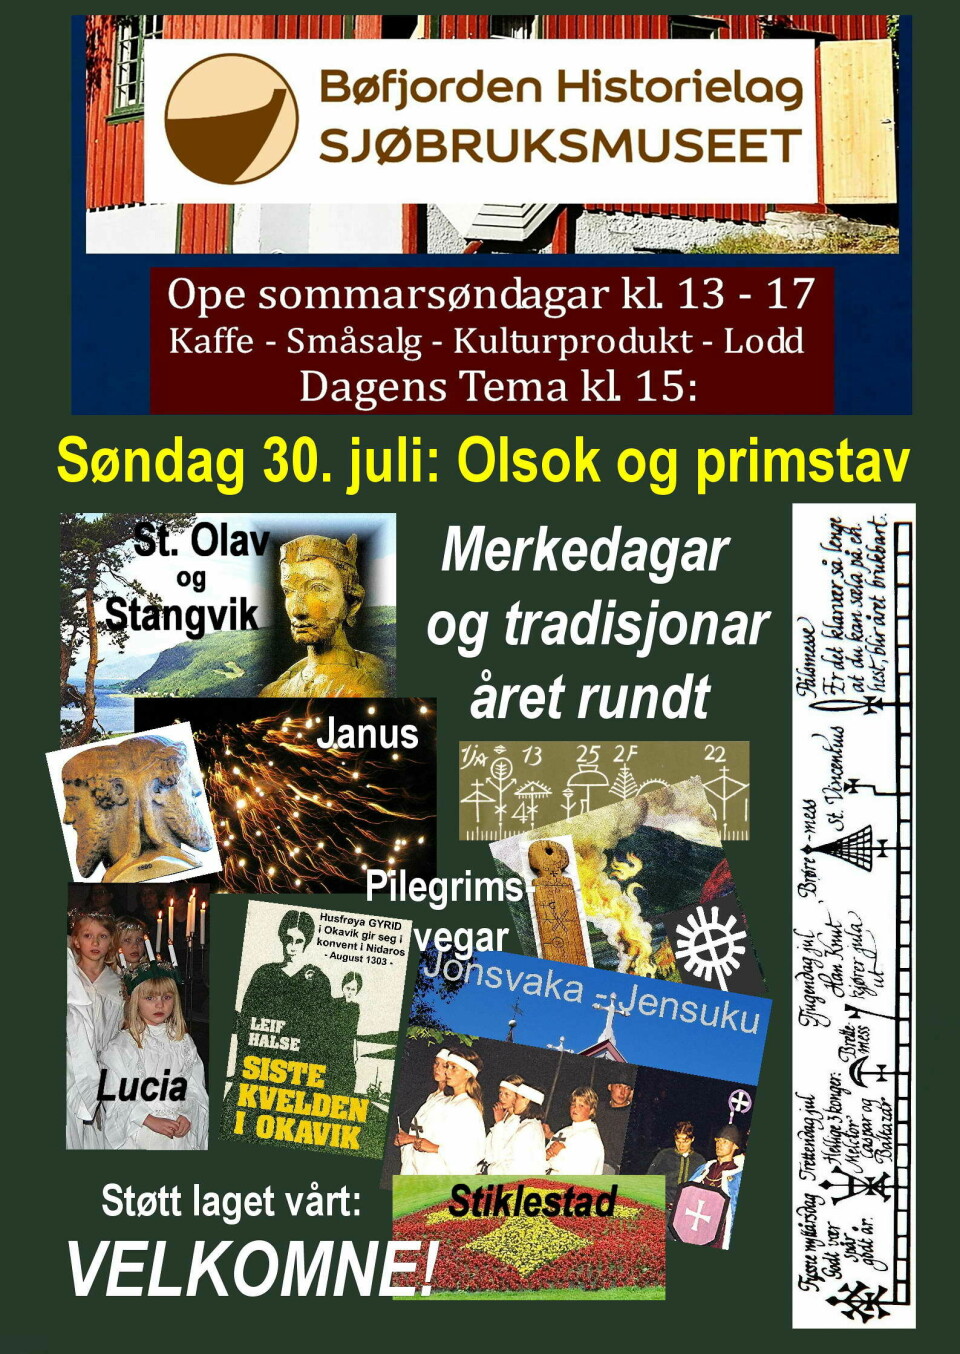 En plakat som viser programmet for Olsok